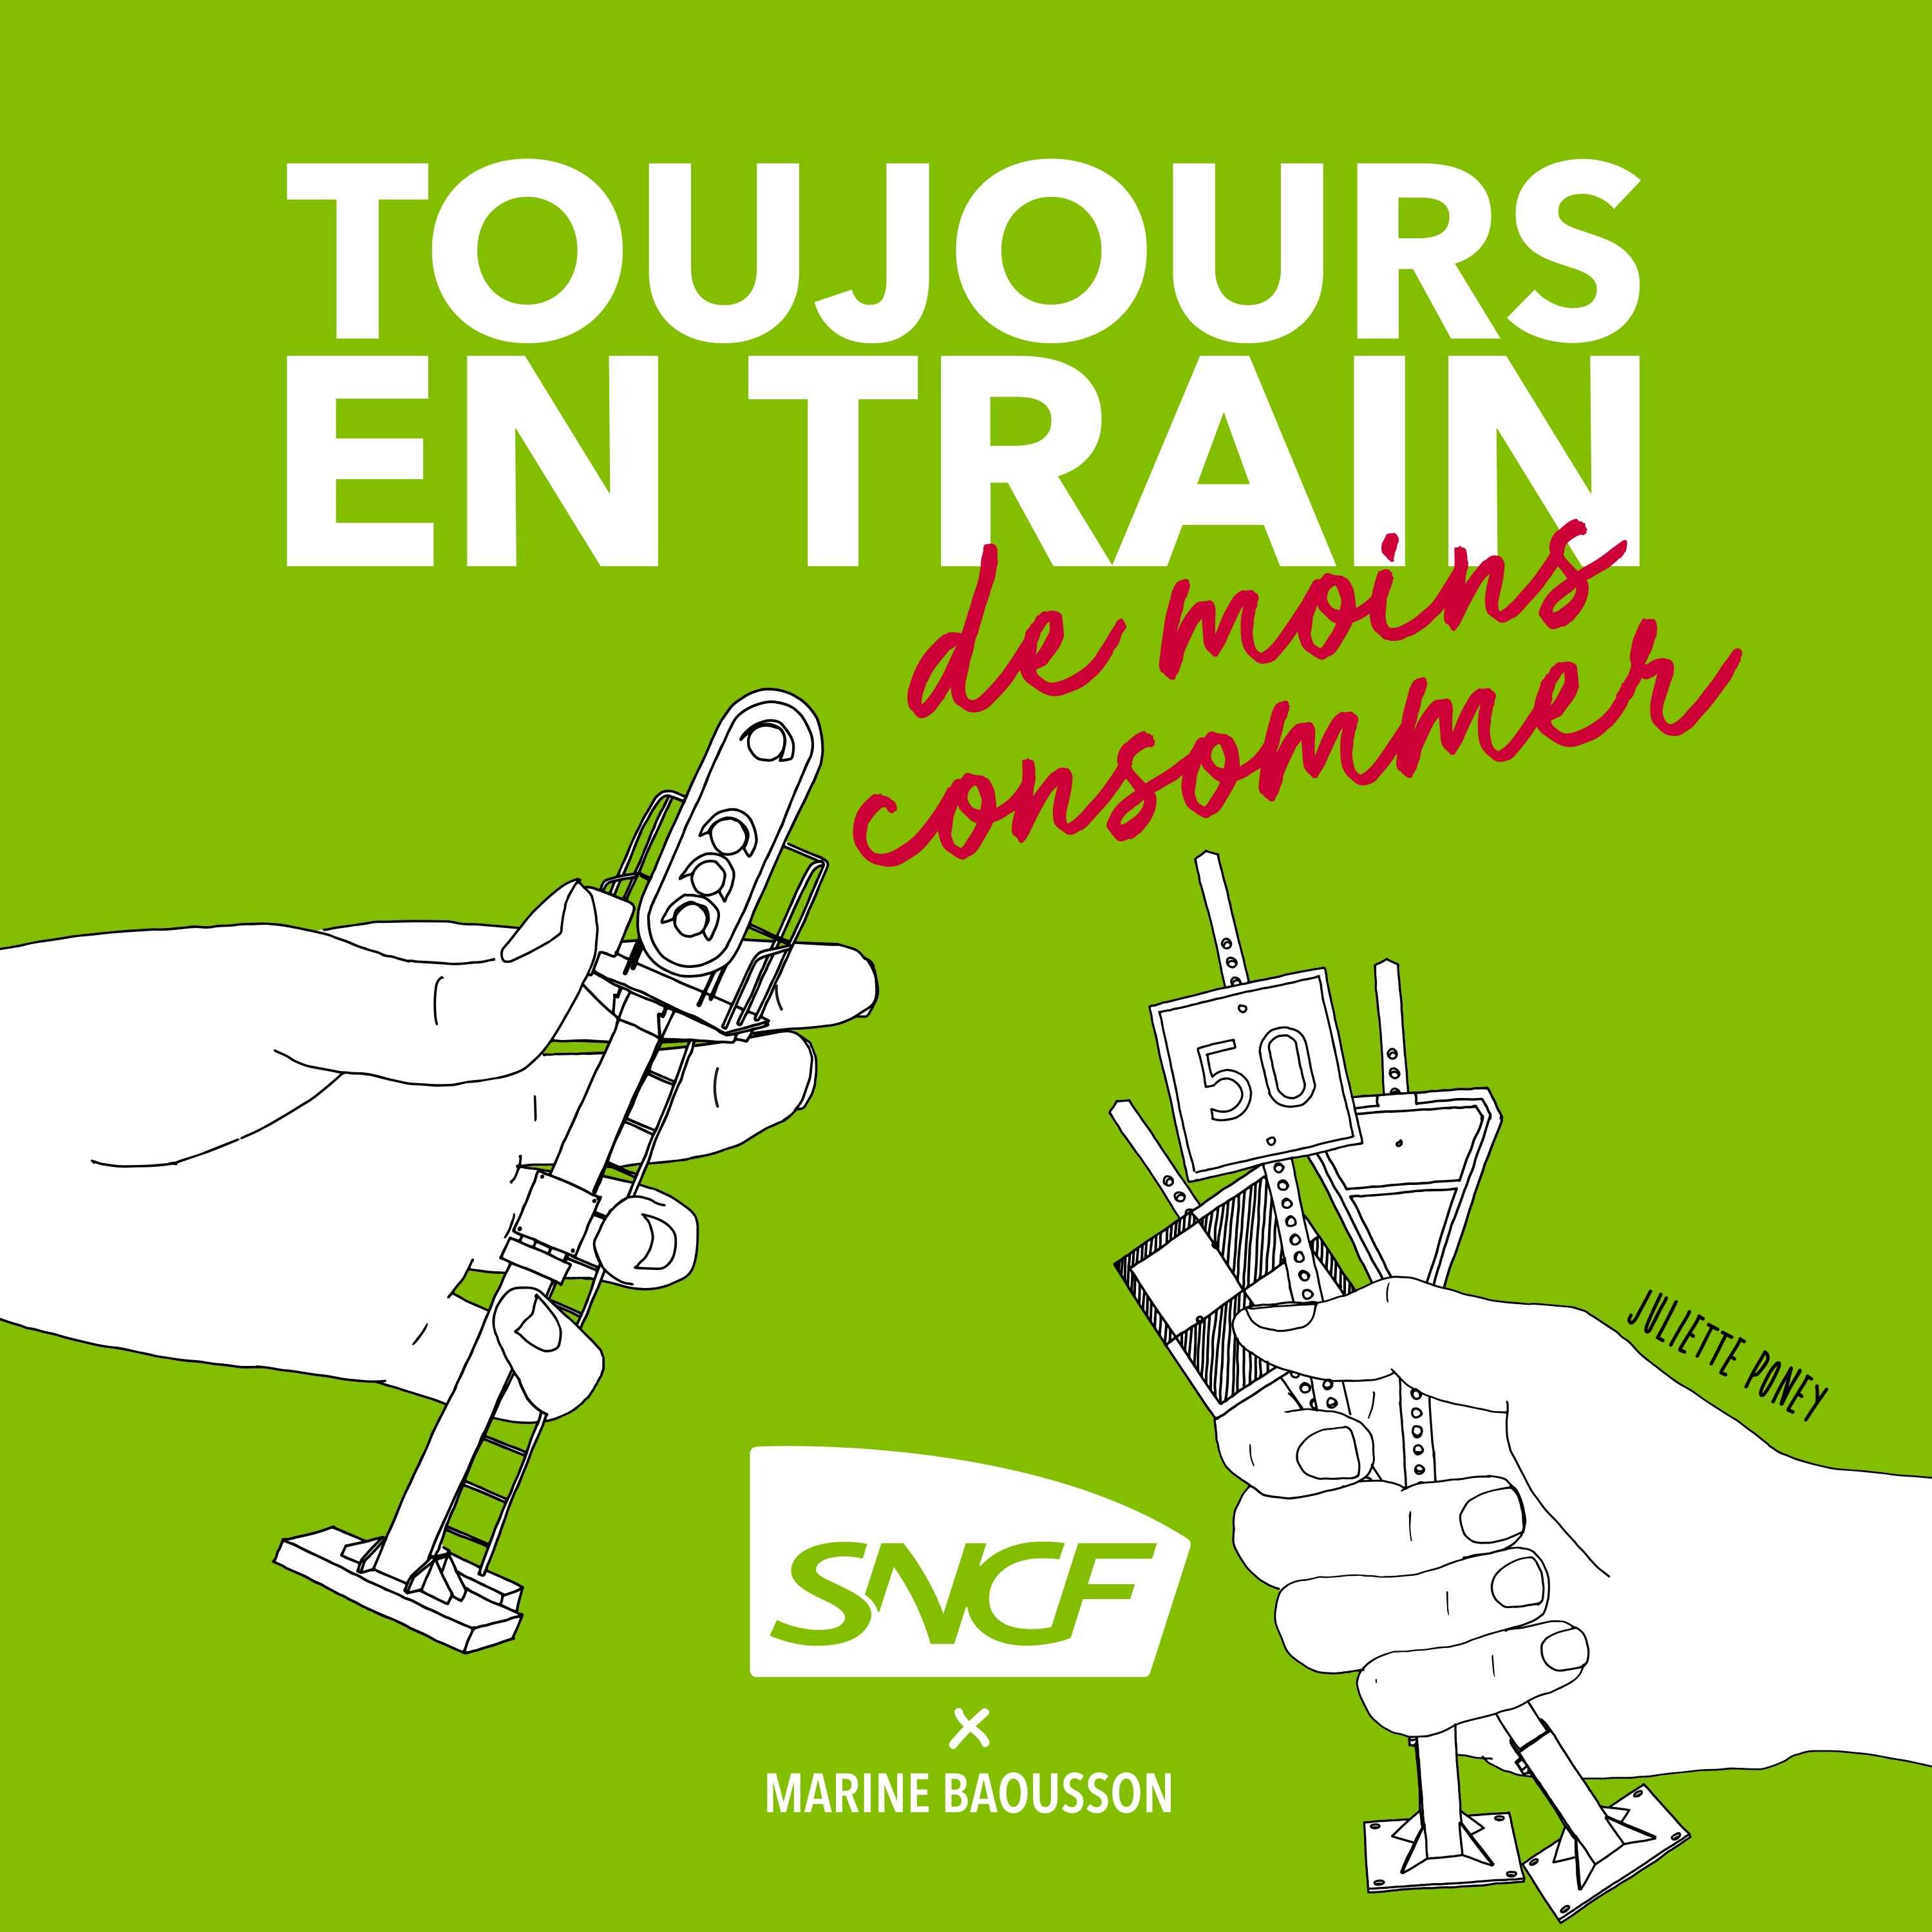 cover art for Toujours en train... de moins consommer